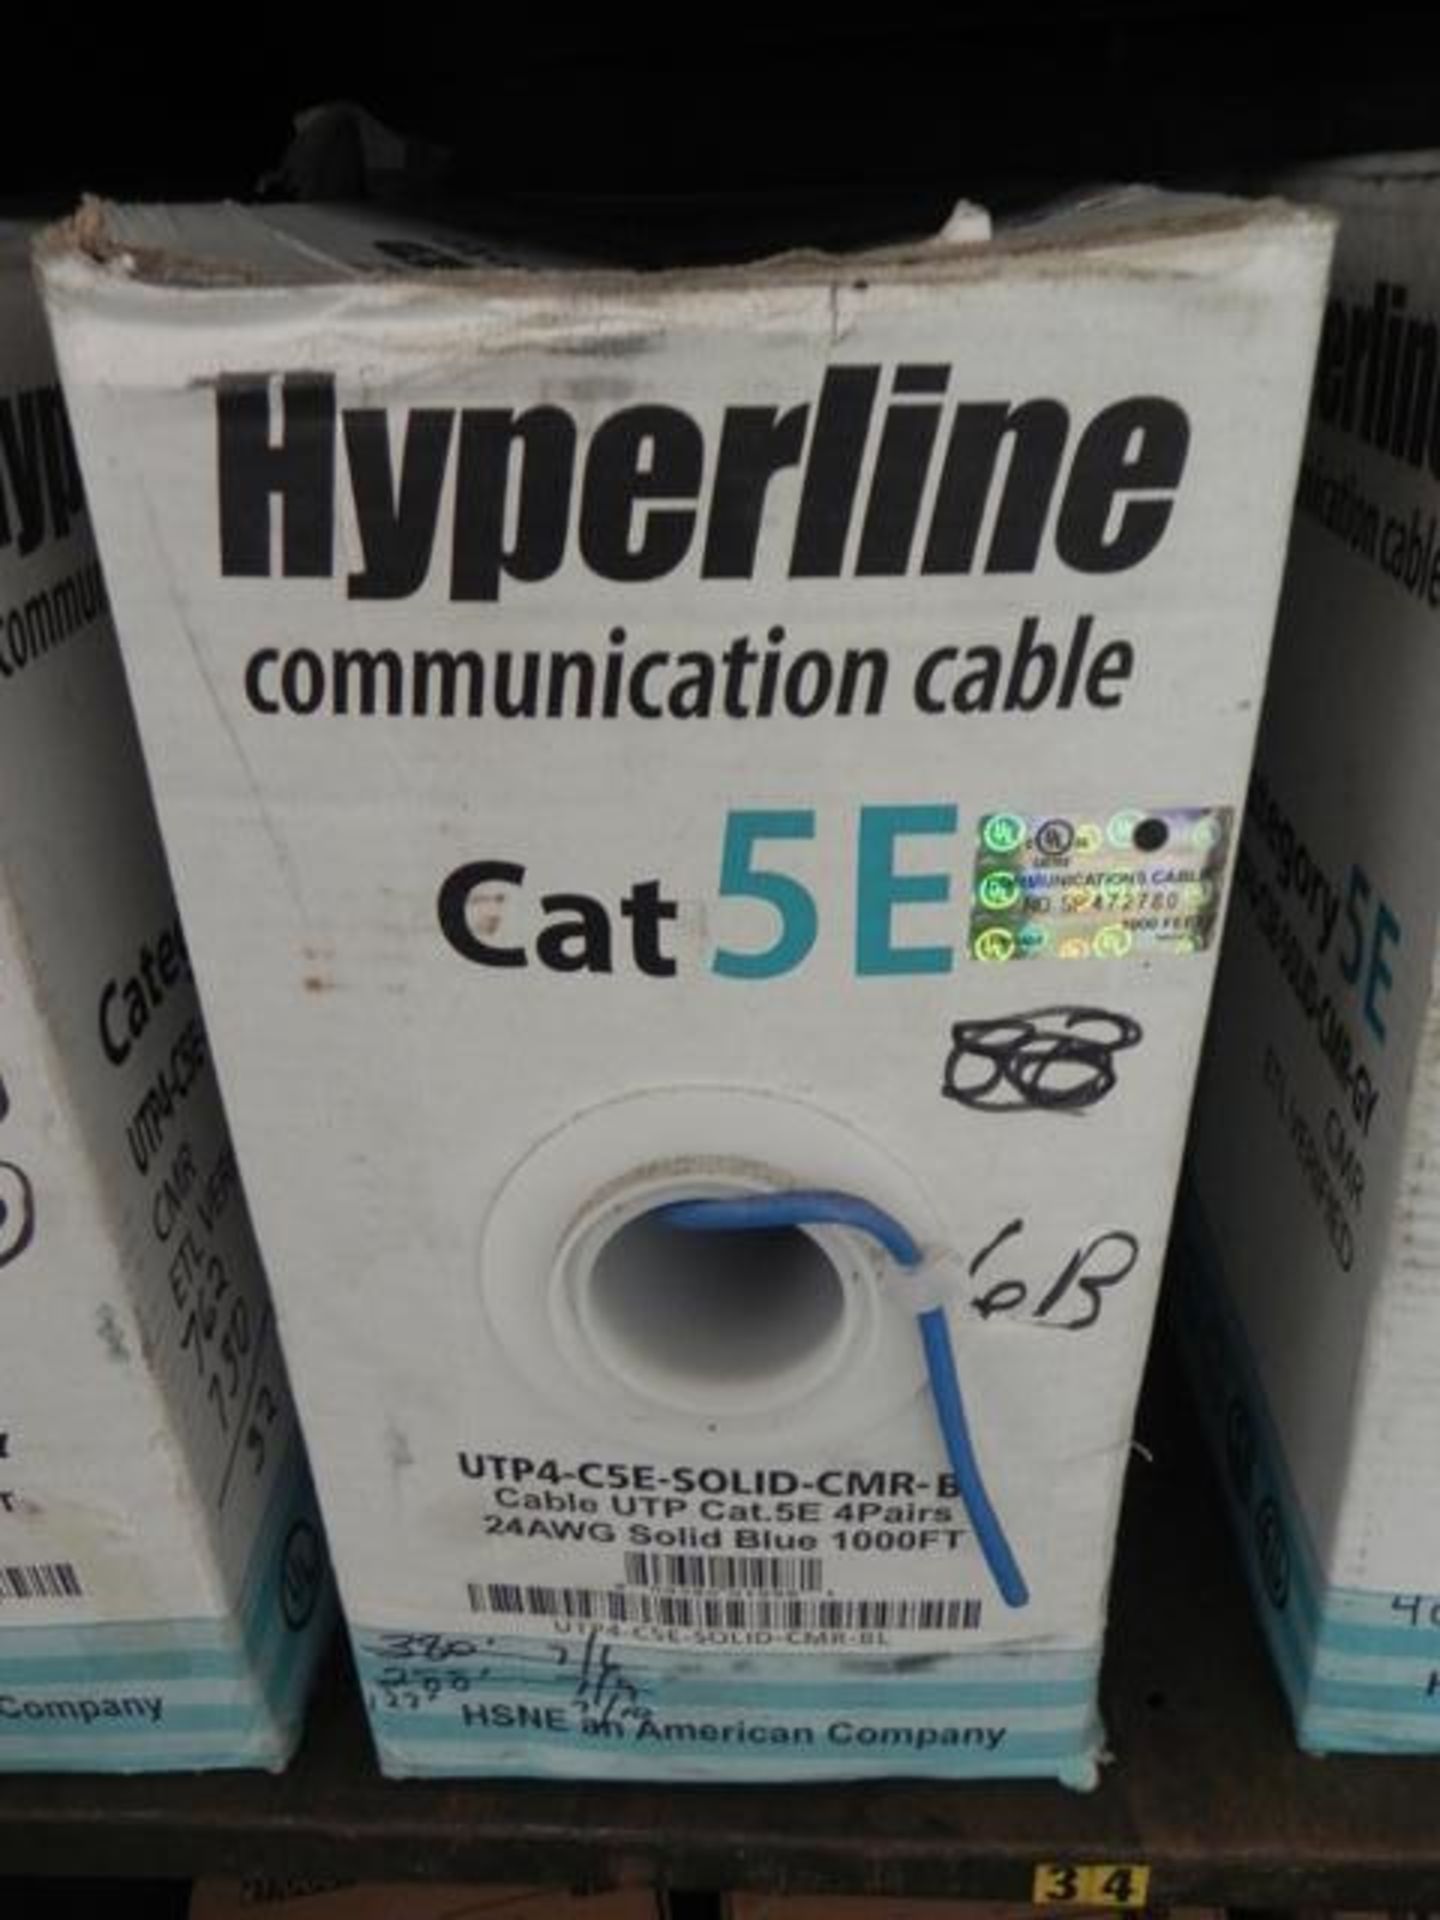 Hyperline Communication Cable Cat SEUTP4 - CSE - SOLID - CPM 2 BL 2/GV, CMP ETL verified 4000 FT - Image 4 of 5